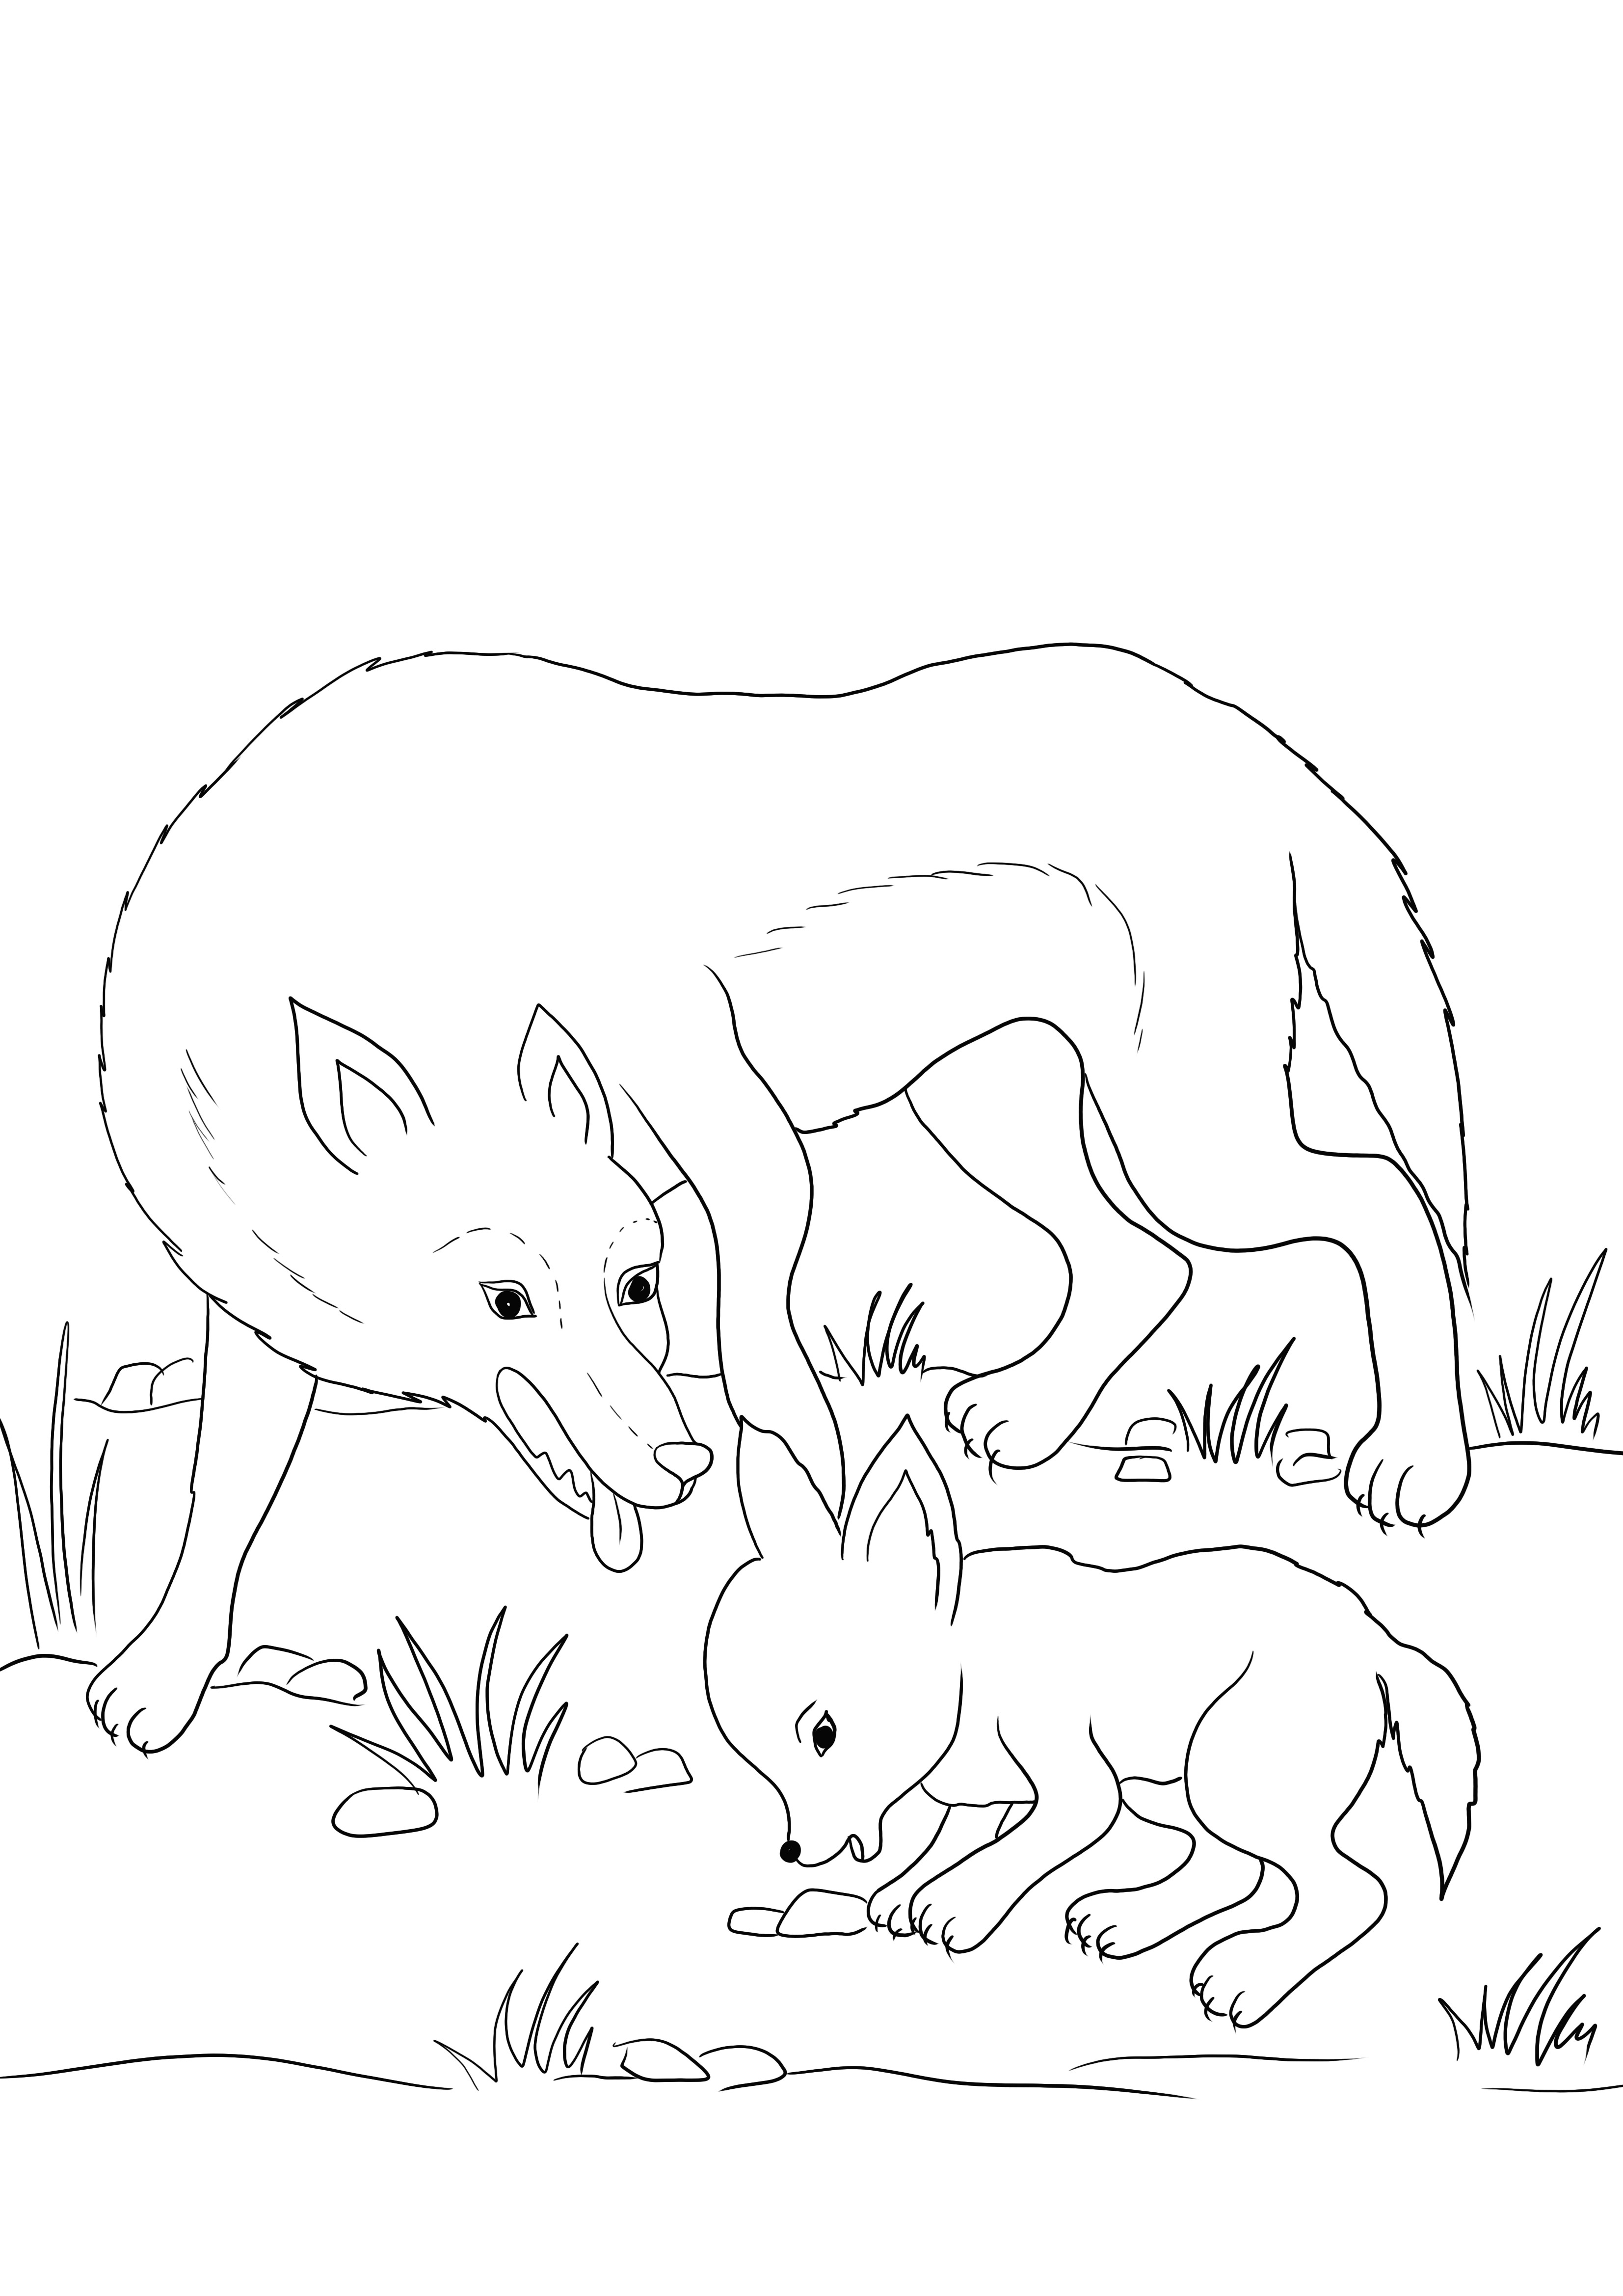  O mamă lup și pui de lup merg împreună de colorat și descărcare gratuită